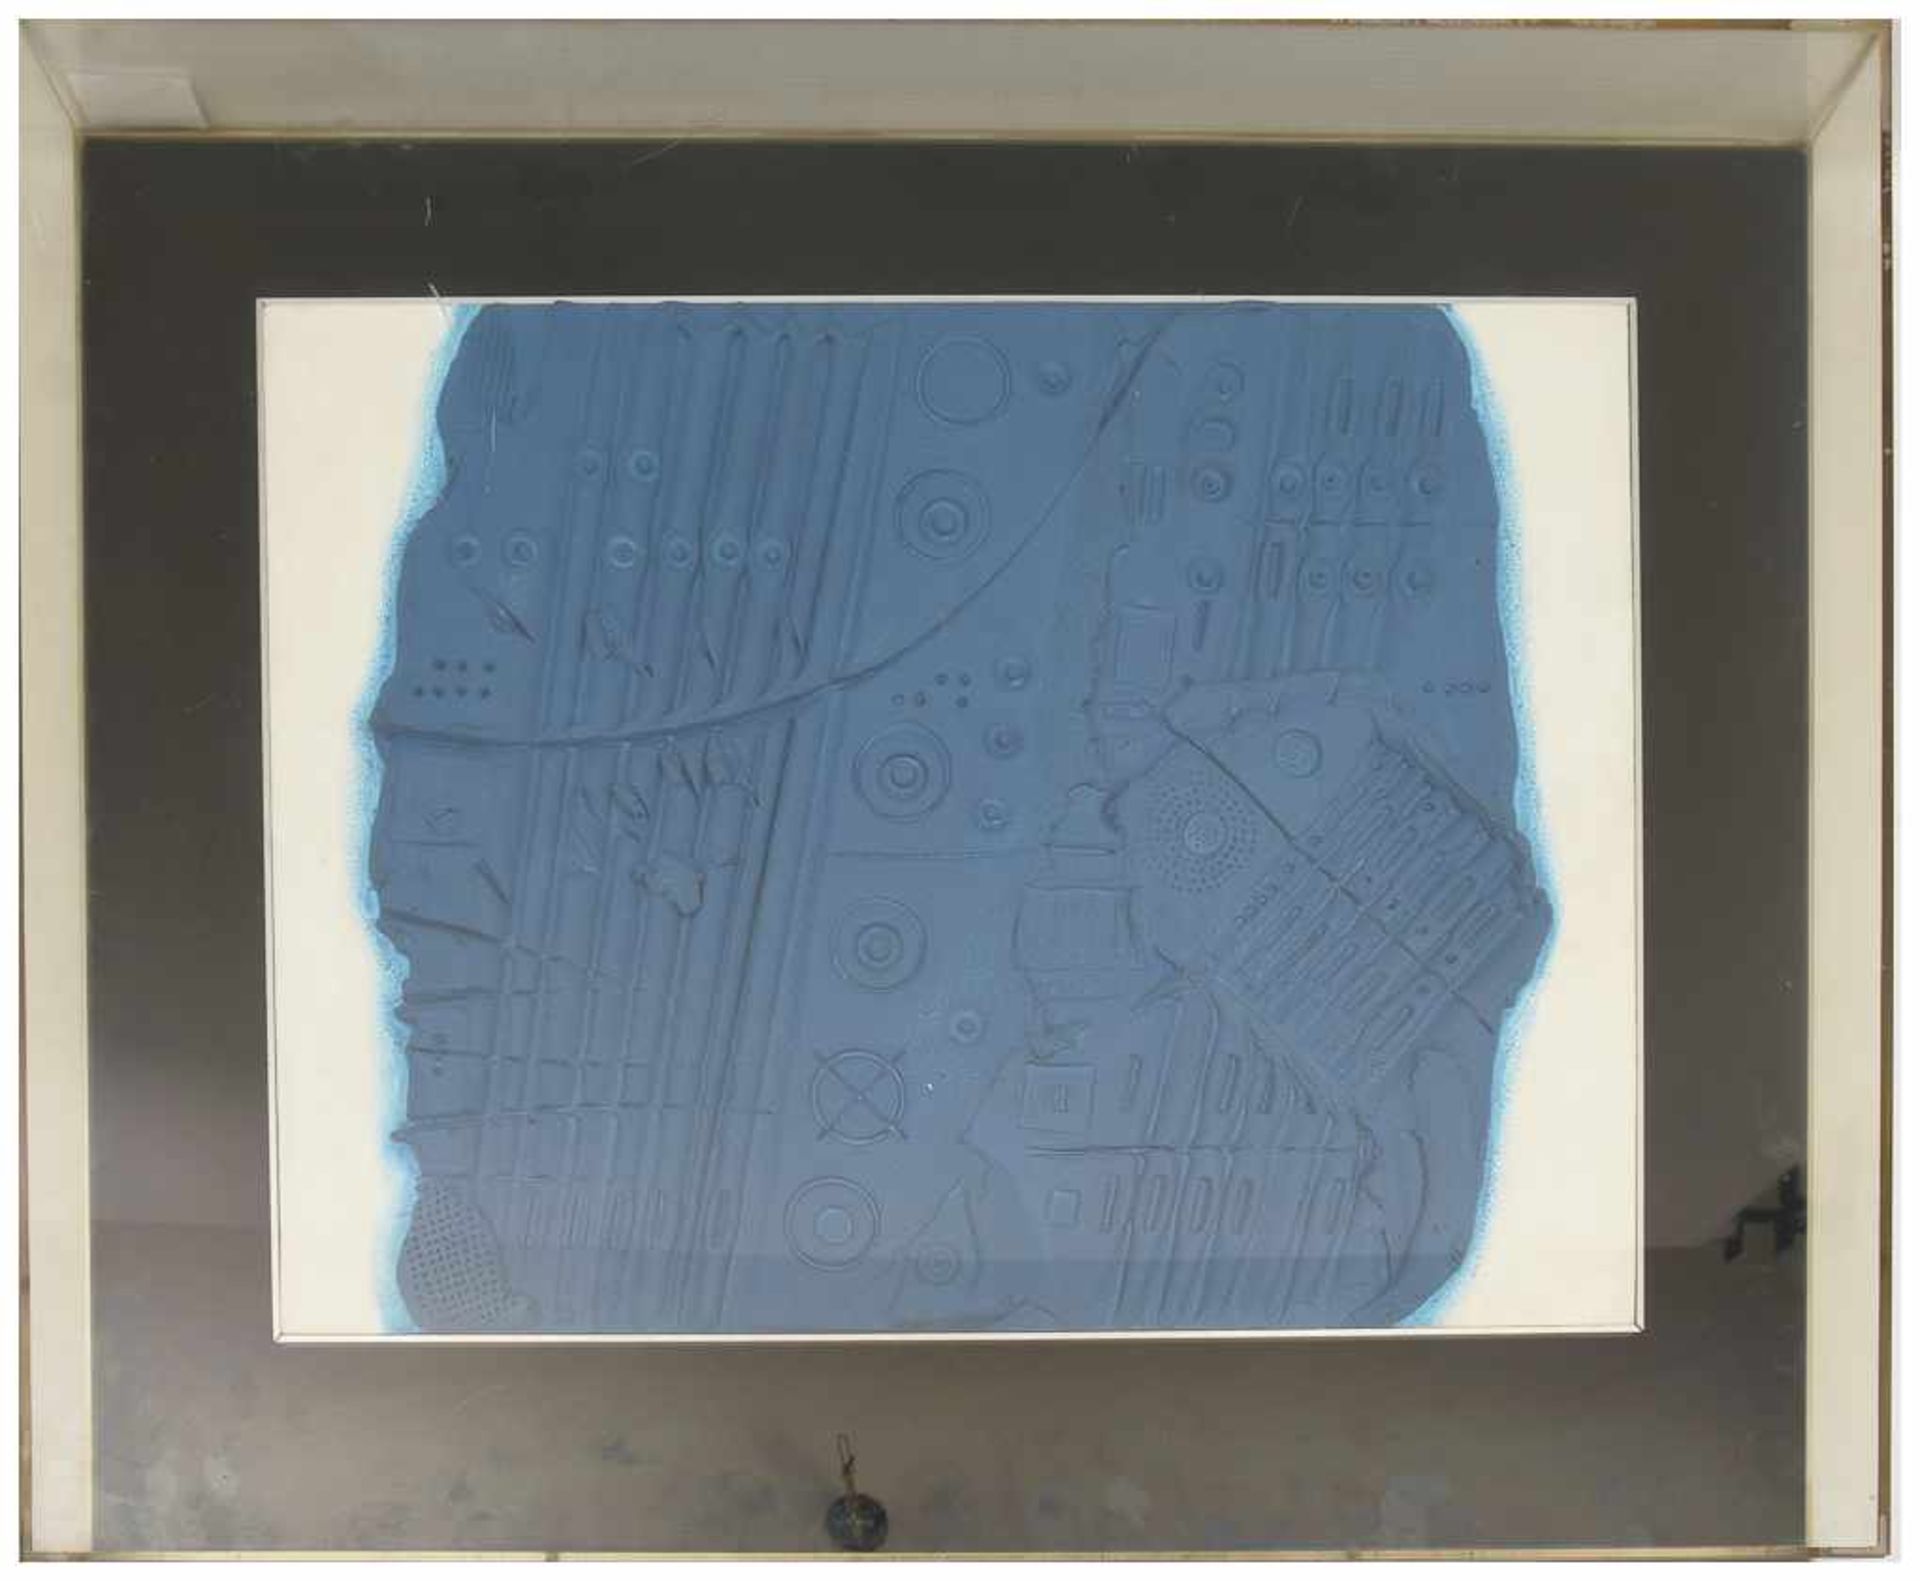 WERNER SCHREIB,"Blaues Siegelbild",hinter Plexiglas gerahmt, 1966 Maße Platte: 53 x 42 cm, Maße